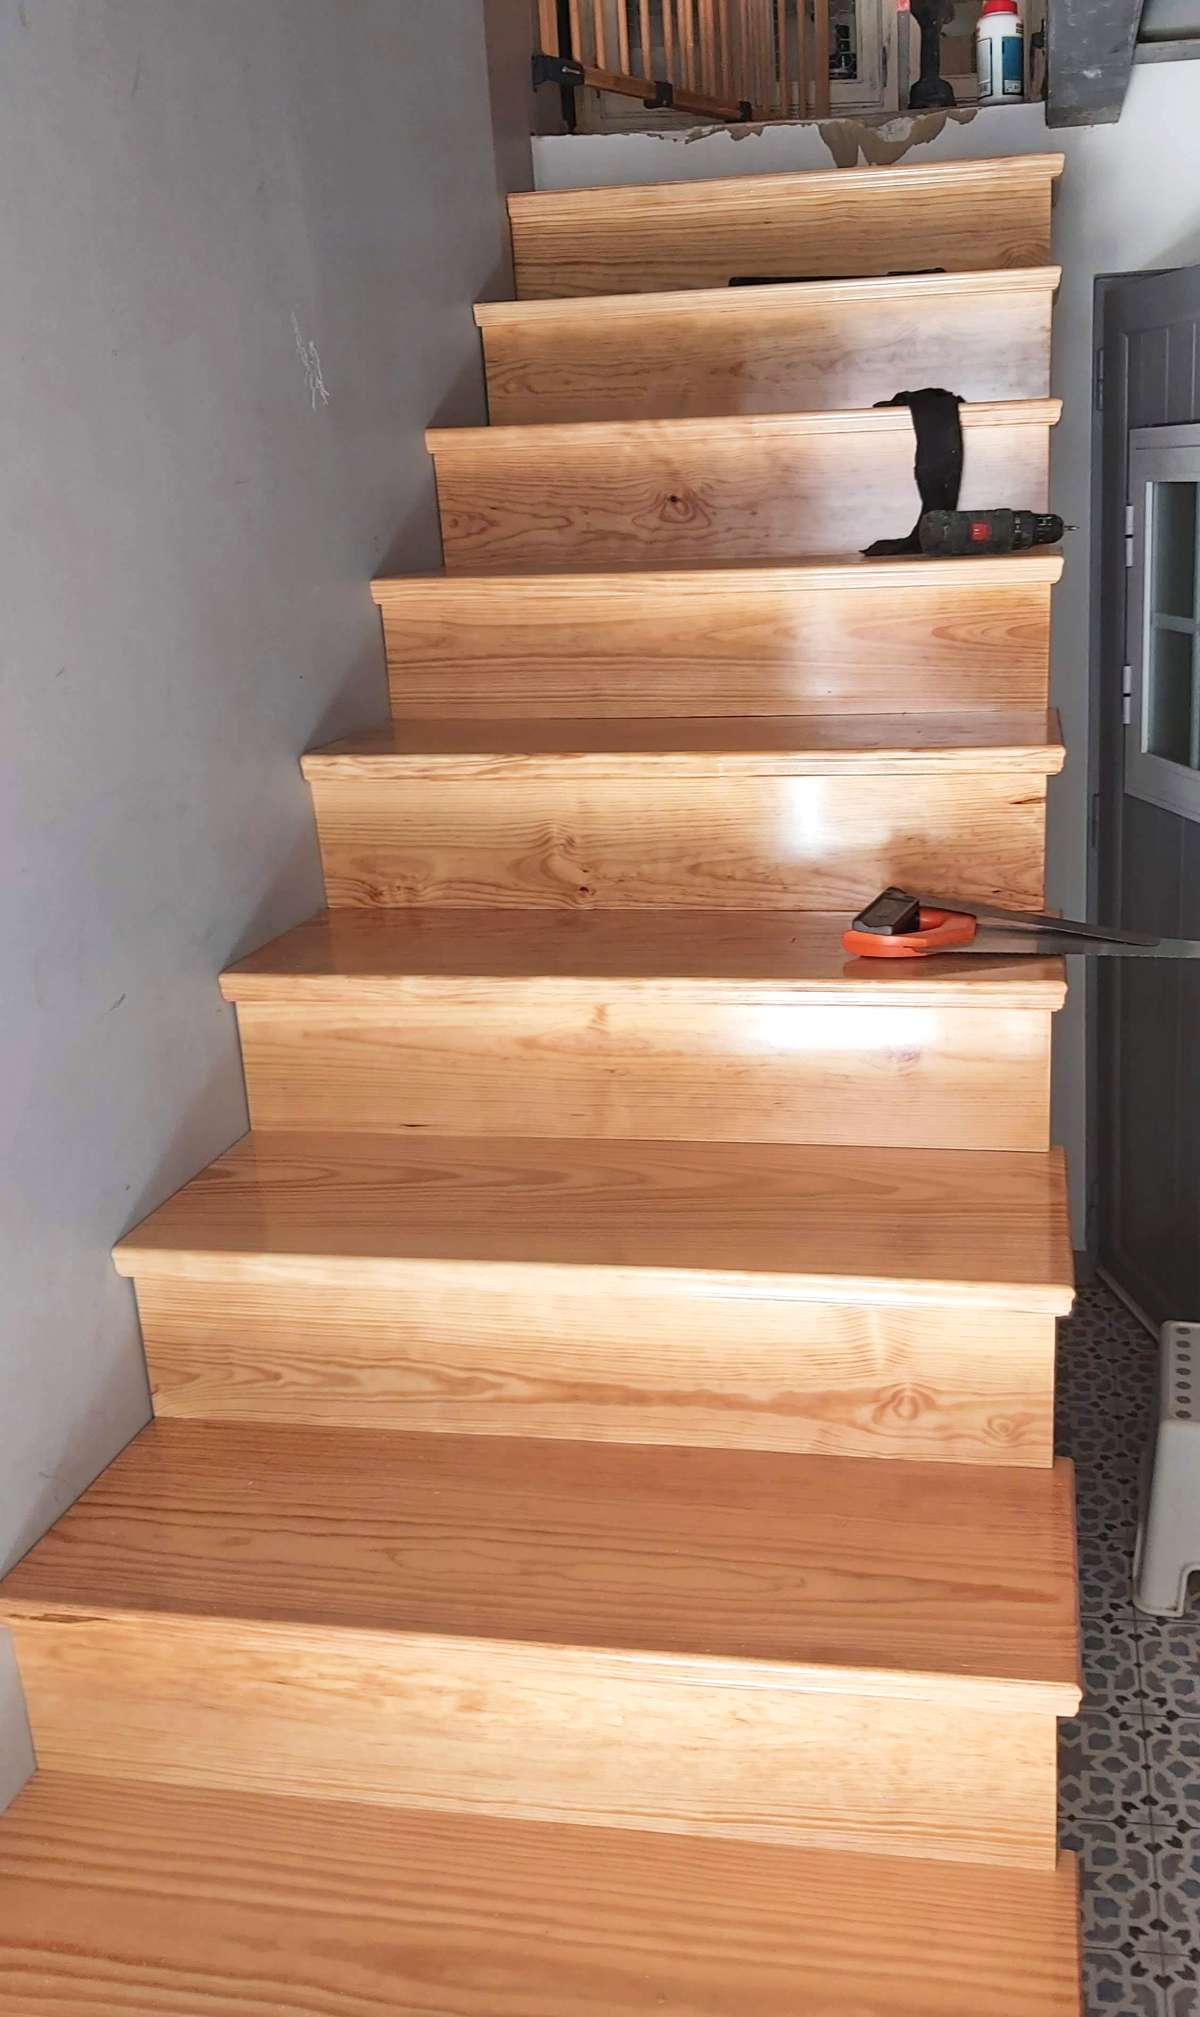 Leonel Mota - Alcobaça - Reparação de Escadas e Escadarias